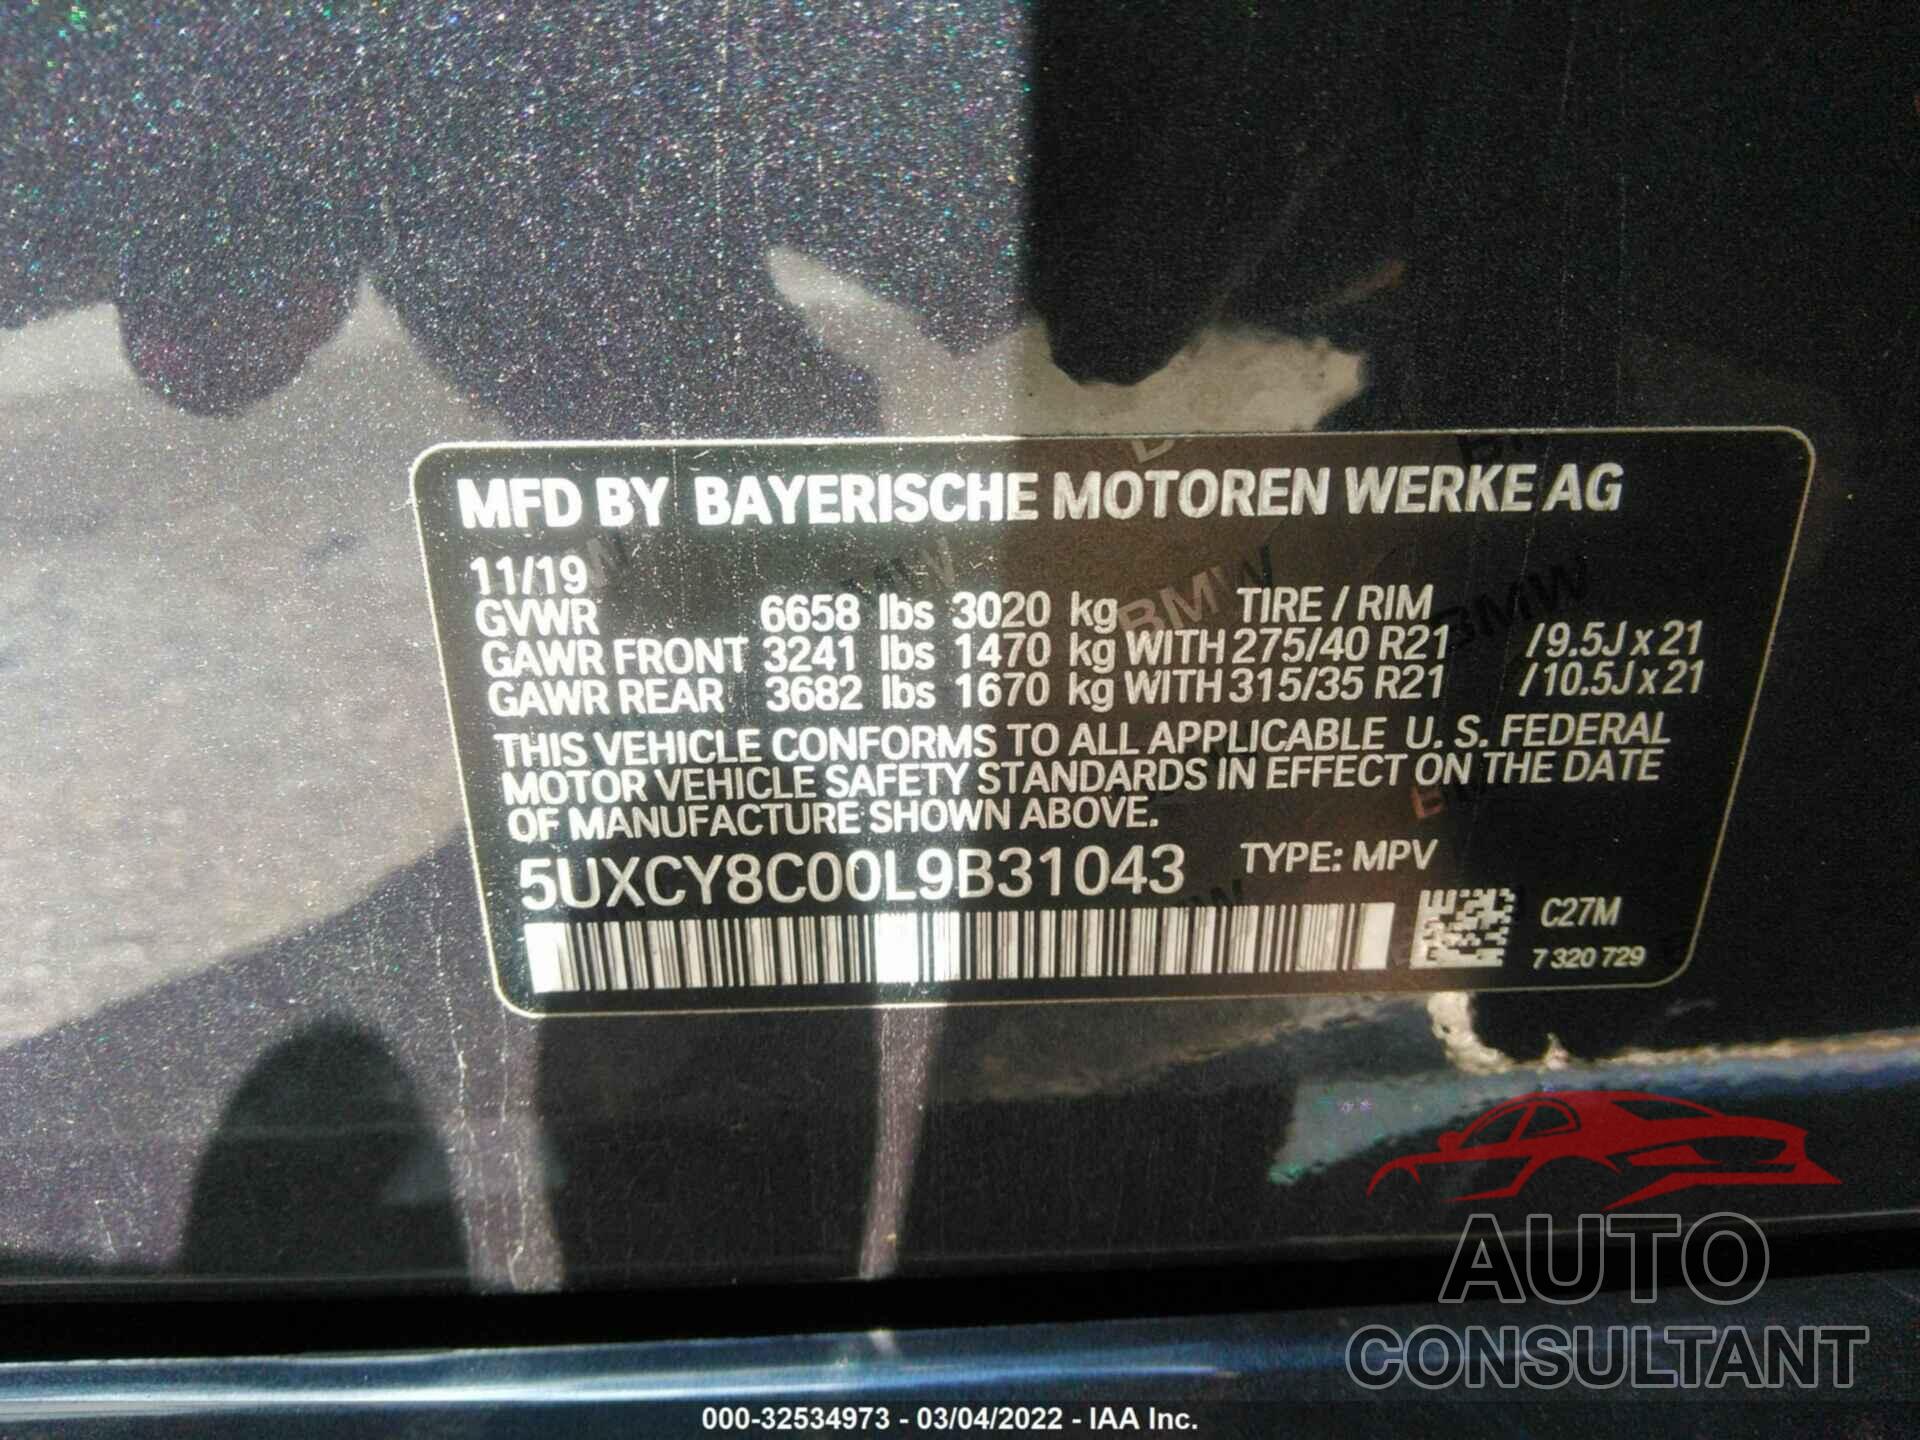 BMW X6 2020 - 5UXCY8C00L9B31043